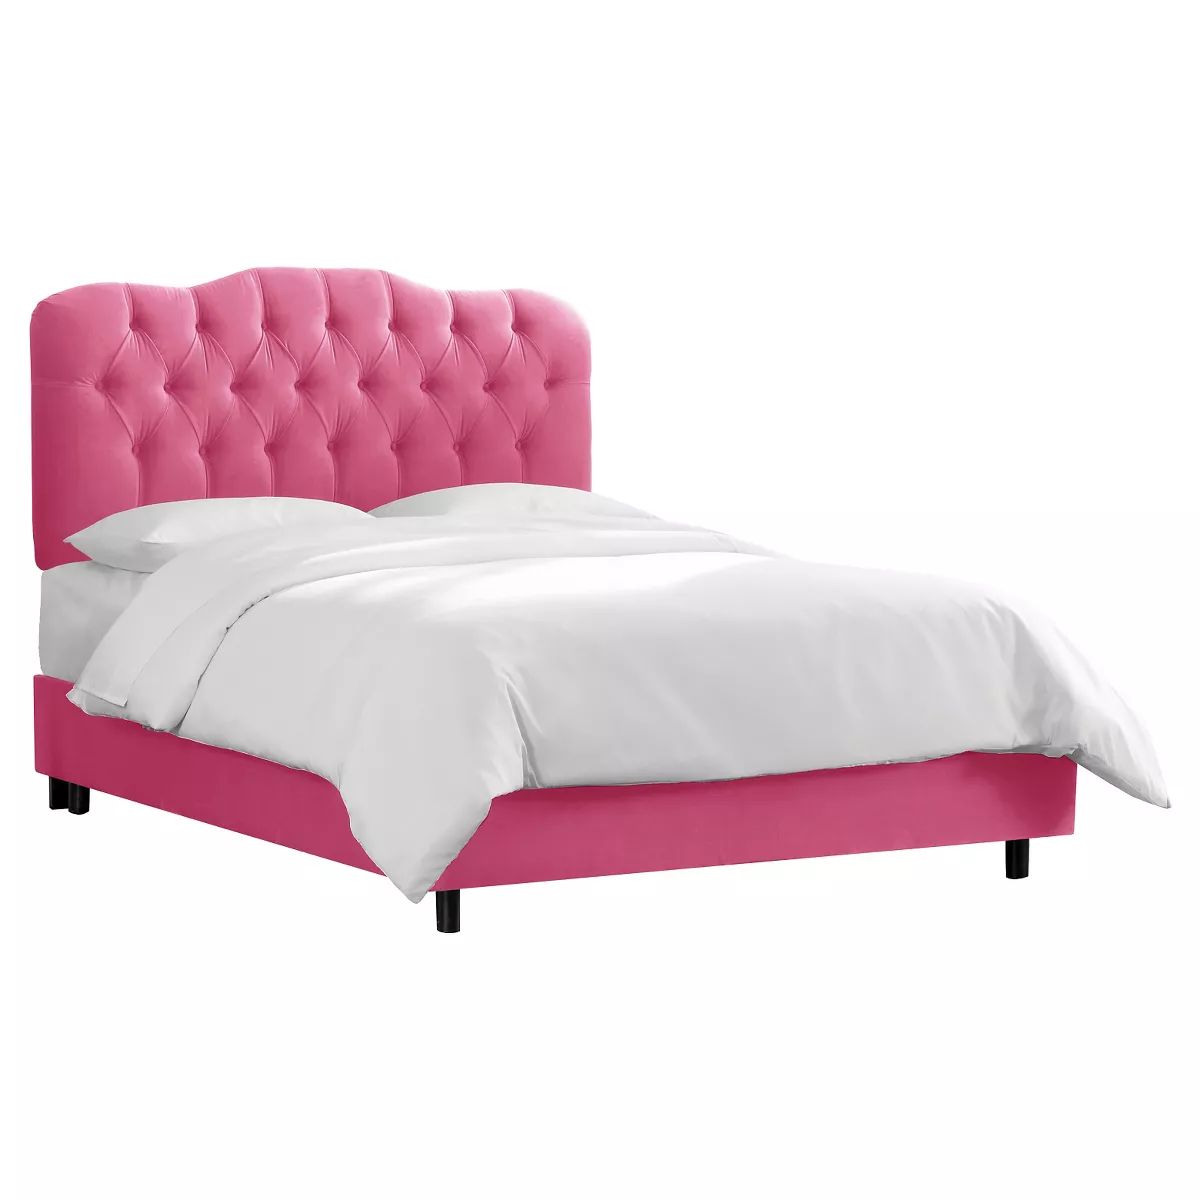 King Seville Microsuede Upholstered Bed Premier Hot Pink - Skyline Furniture | Target